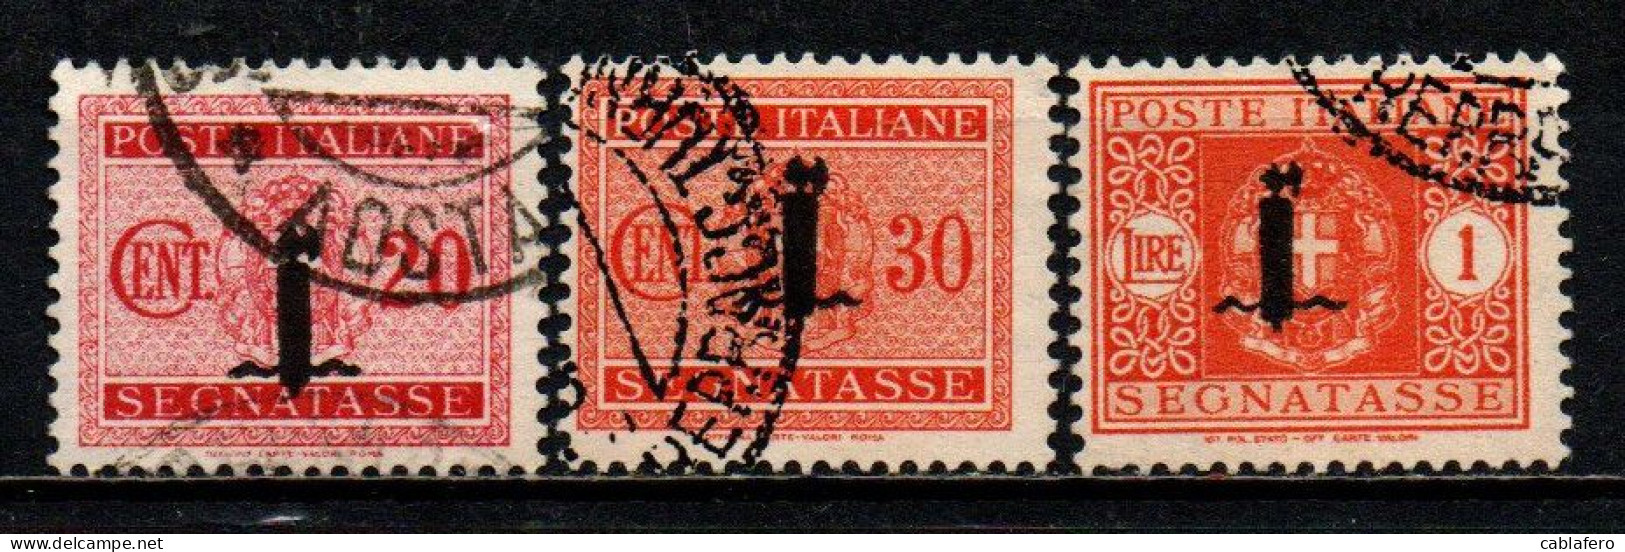 ITALIA RSI - 1944 - SEGNATASSE - FASCETTO - 20 E 30 CENT + 1 LIRA - USATI - Postage Due